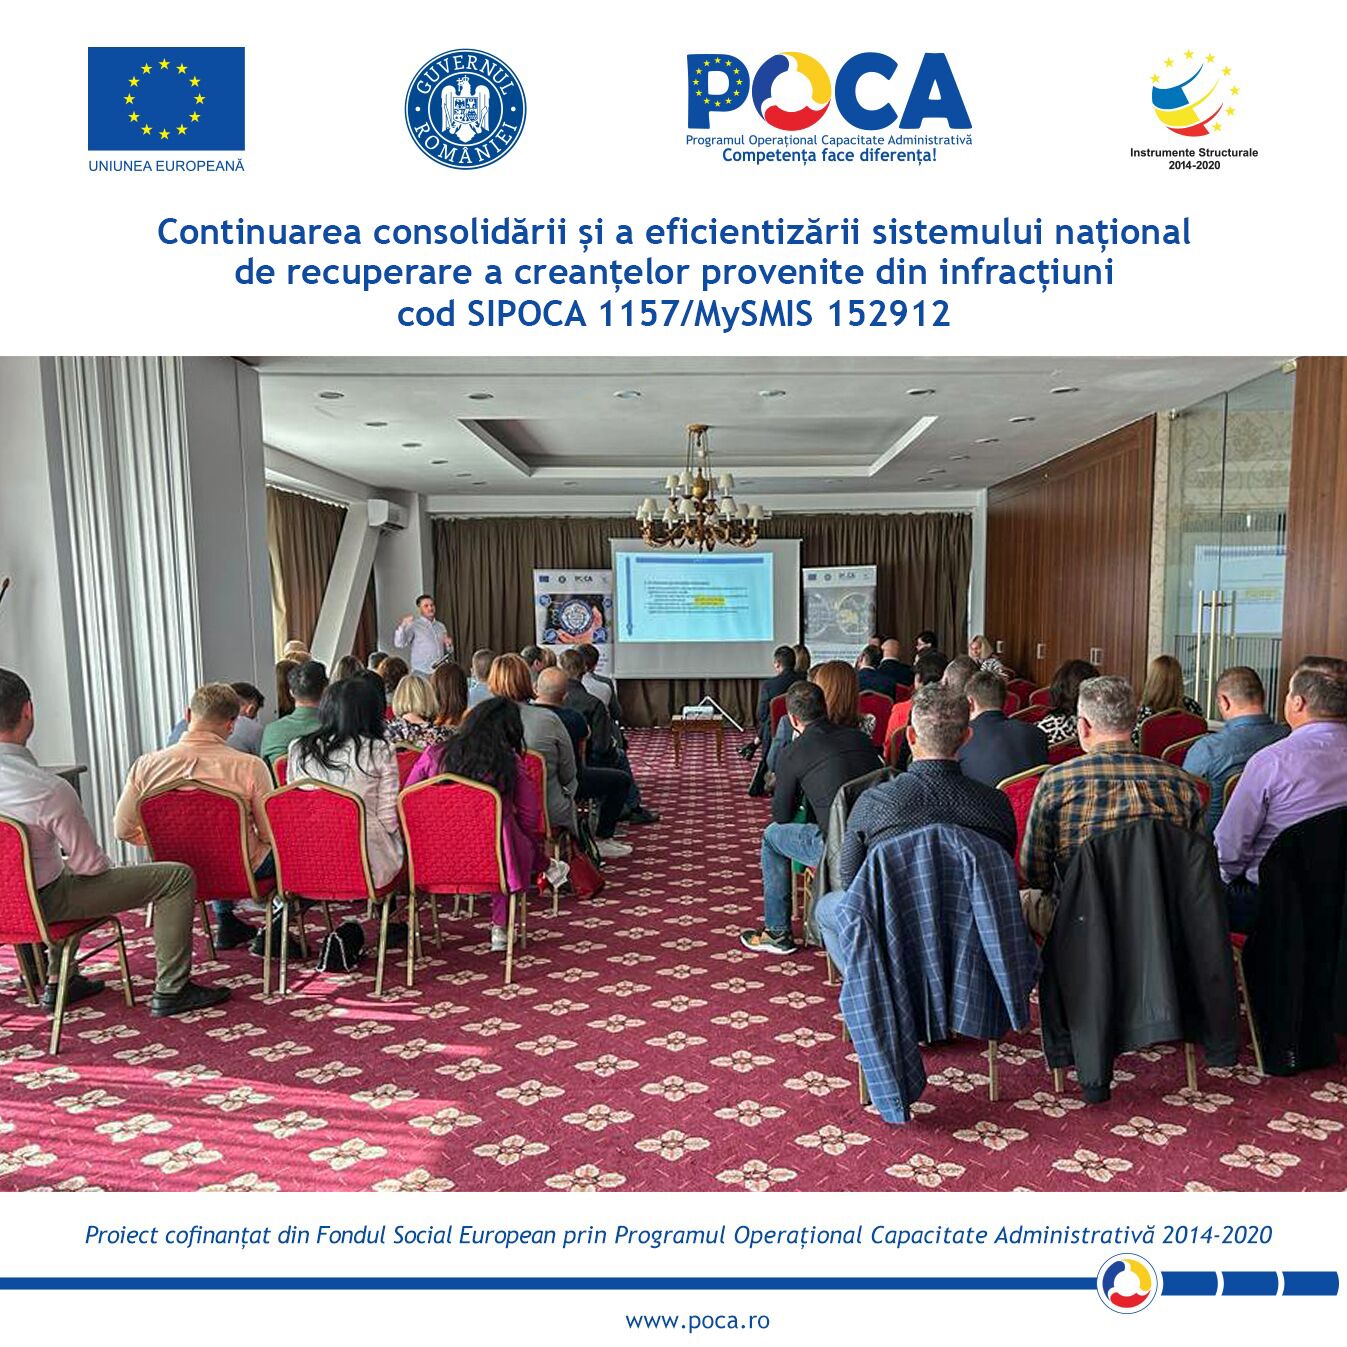 Conferința regională organizată la Brașov în cadrul proiectului „Continuarea consolidării și a eficientizării sistemului național de recuperare a creanțelor provenite din infracțiuni” cod SIPOCA 1157, cod MySMIS 152912